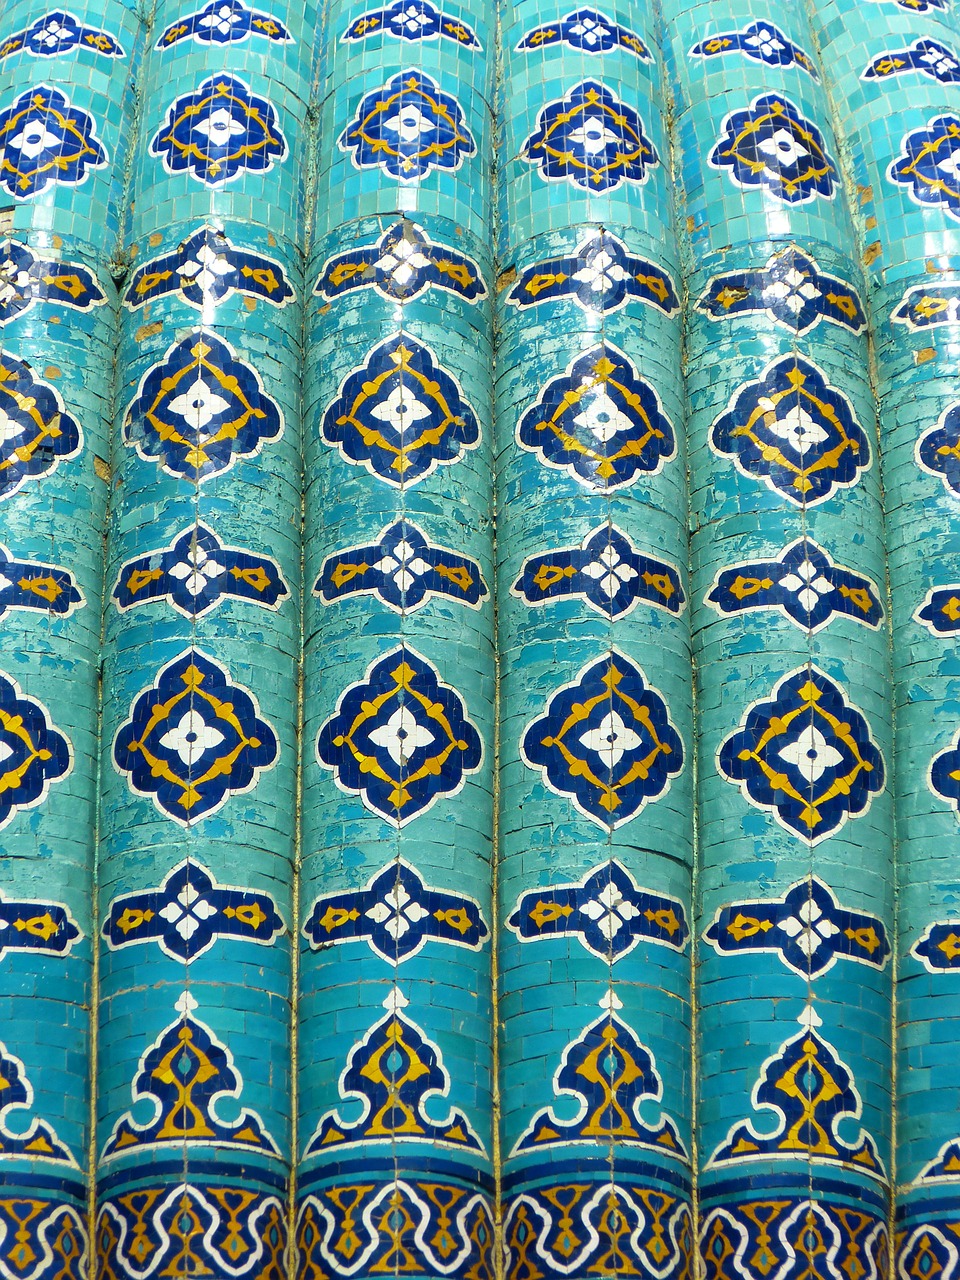 uzbekistan mosaic pattern free photo